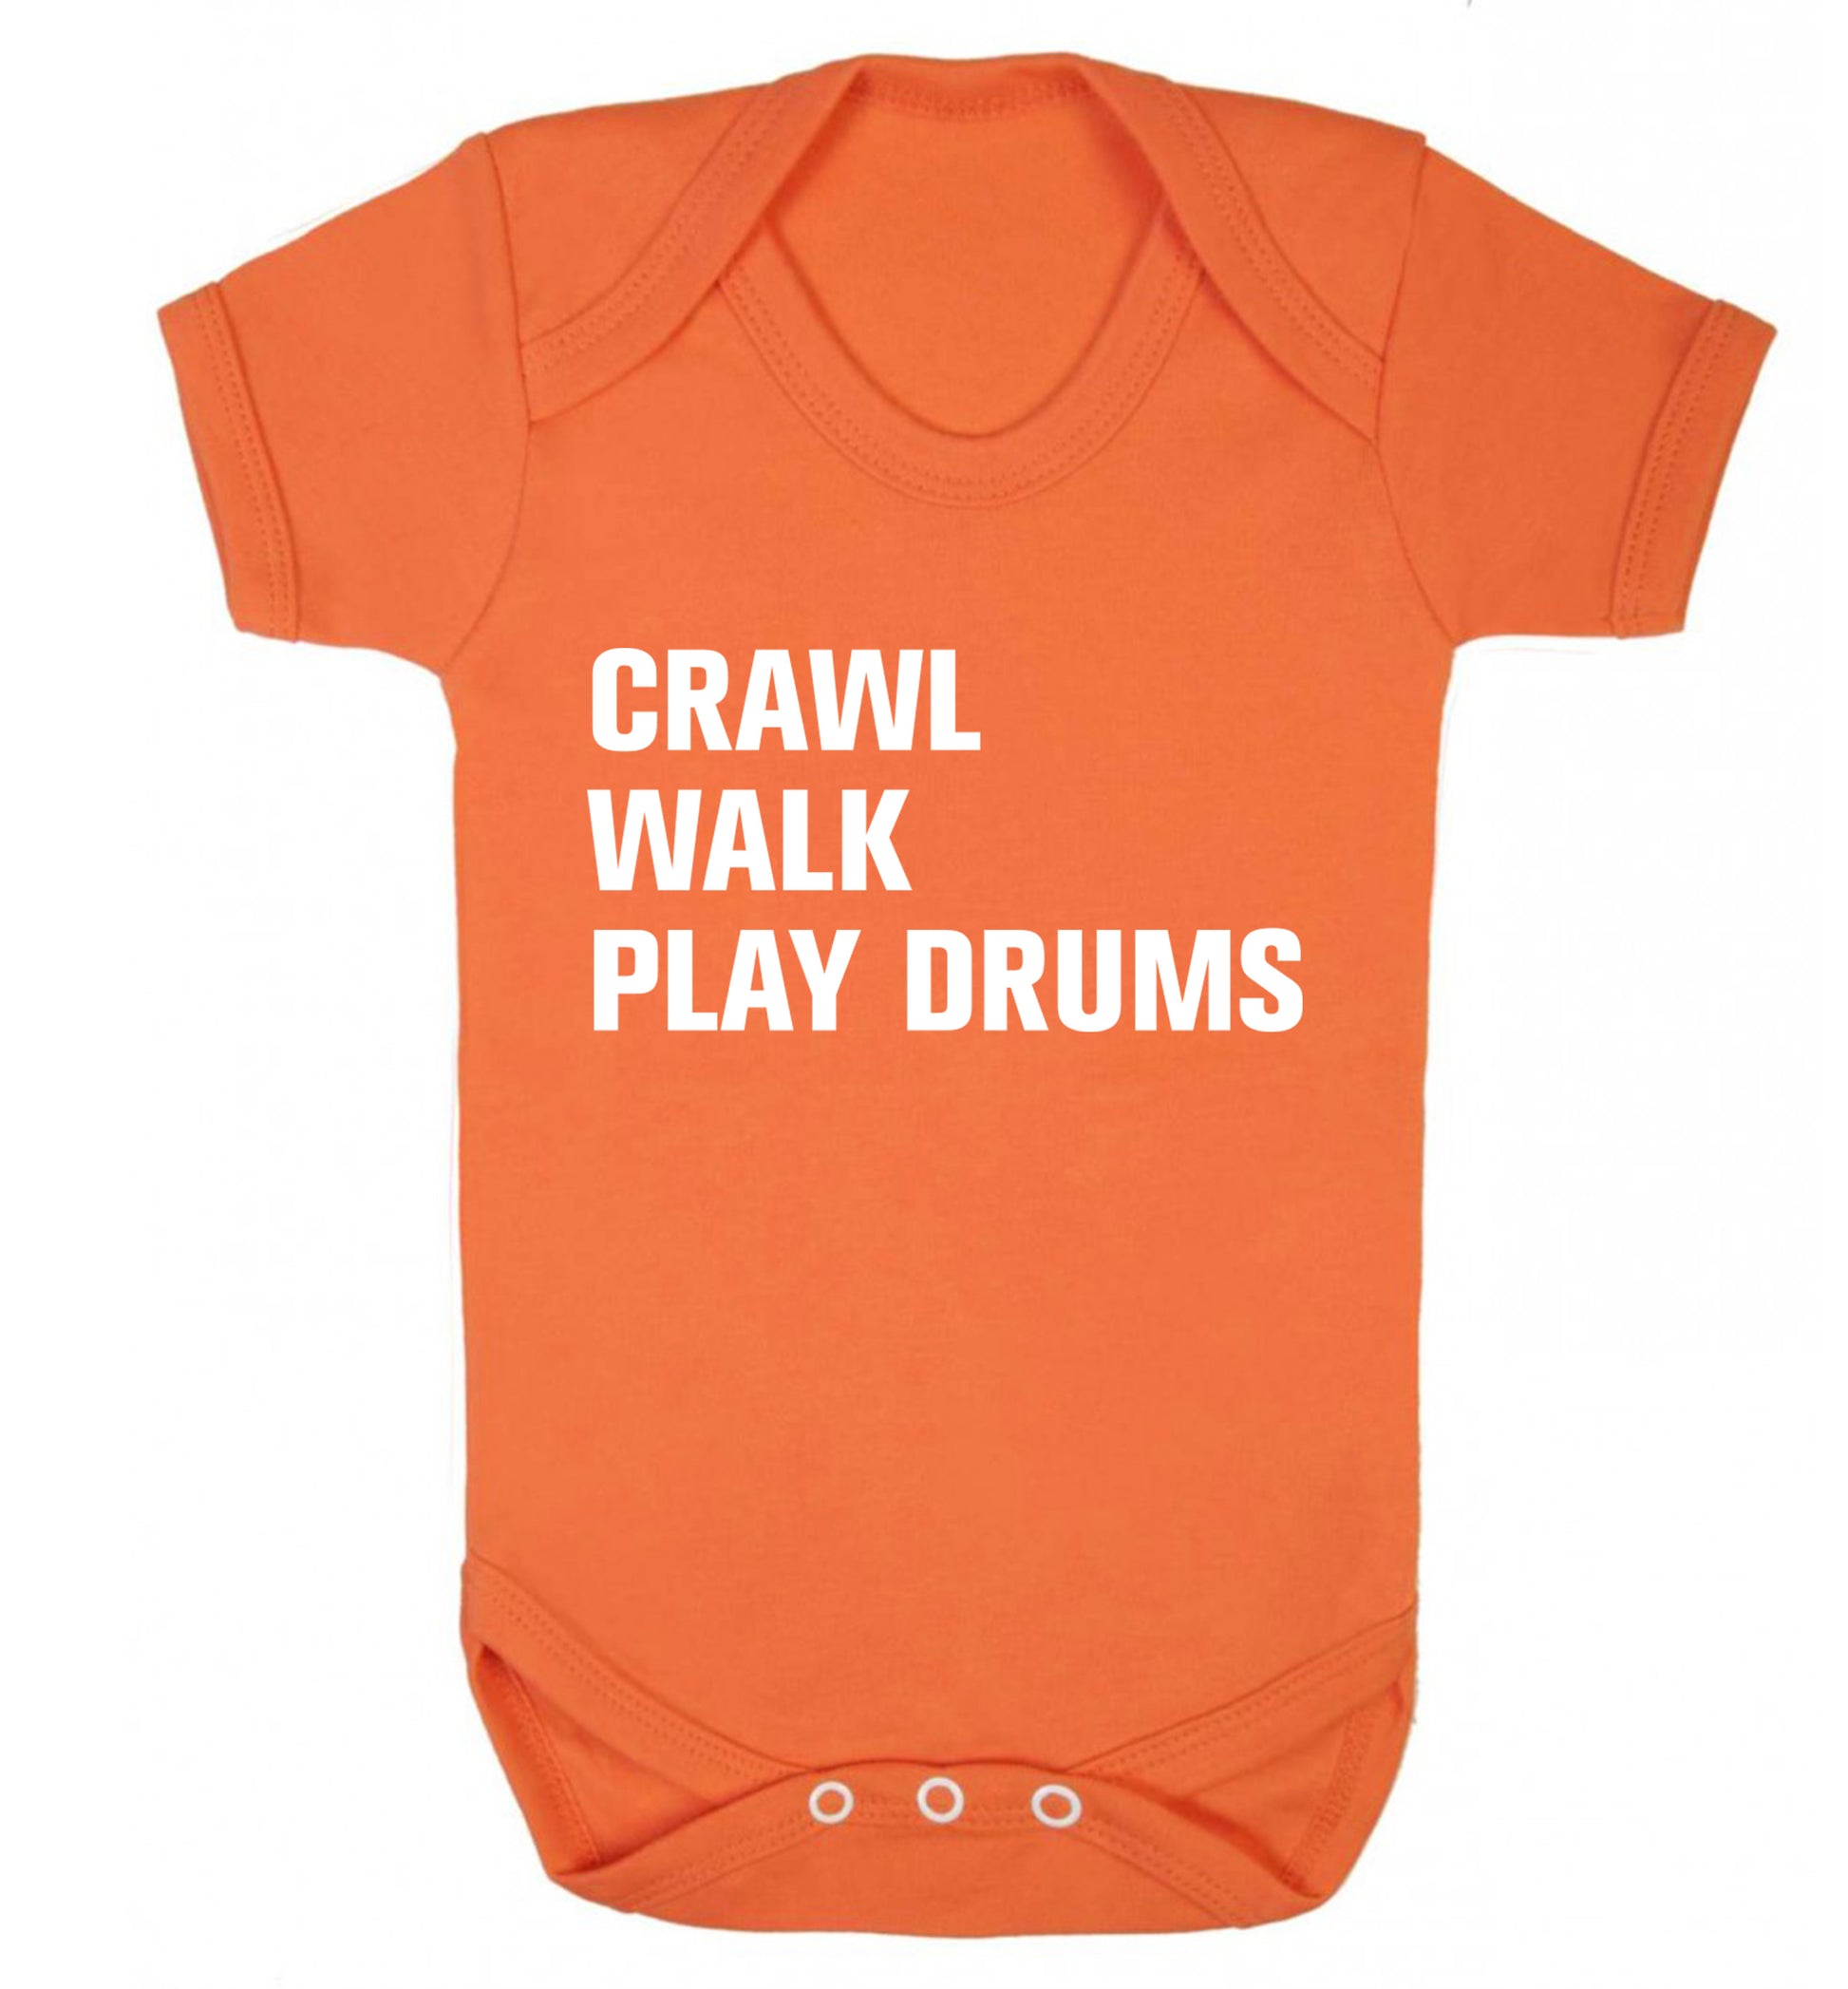 Crawl walk play drums Baby Vest orange 18-24 months